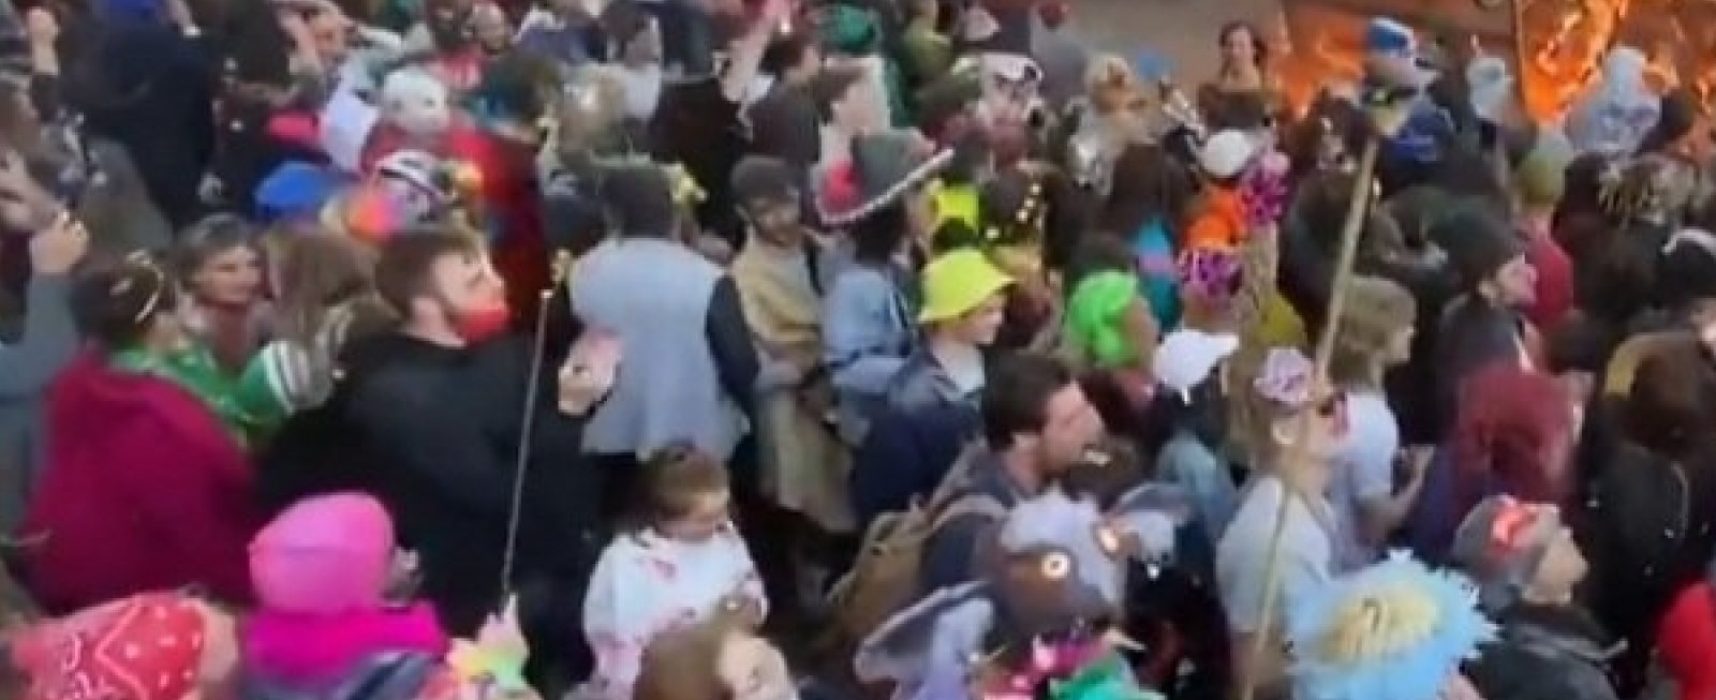 No sul da França, carnaval ilegal reúne cerca de 6,5 mil pessoas sem medidas contra Covid-19